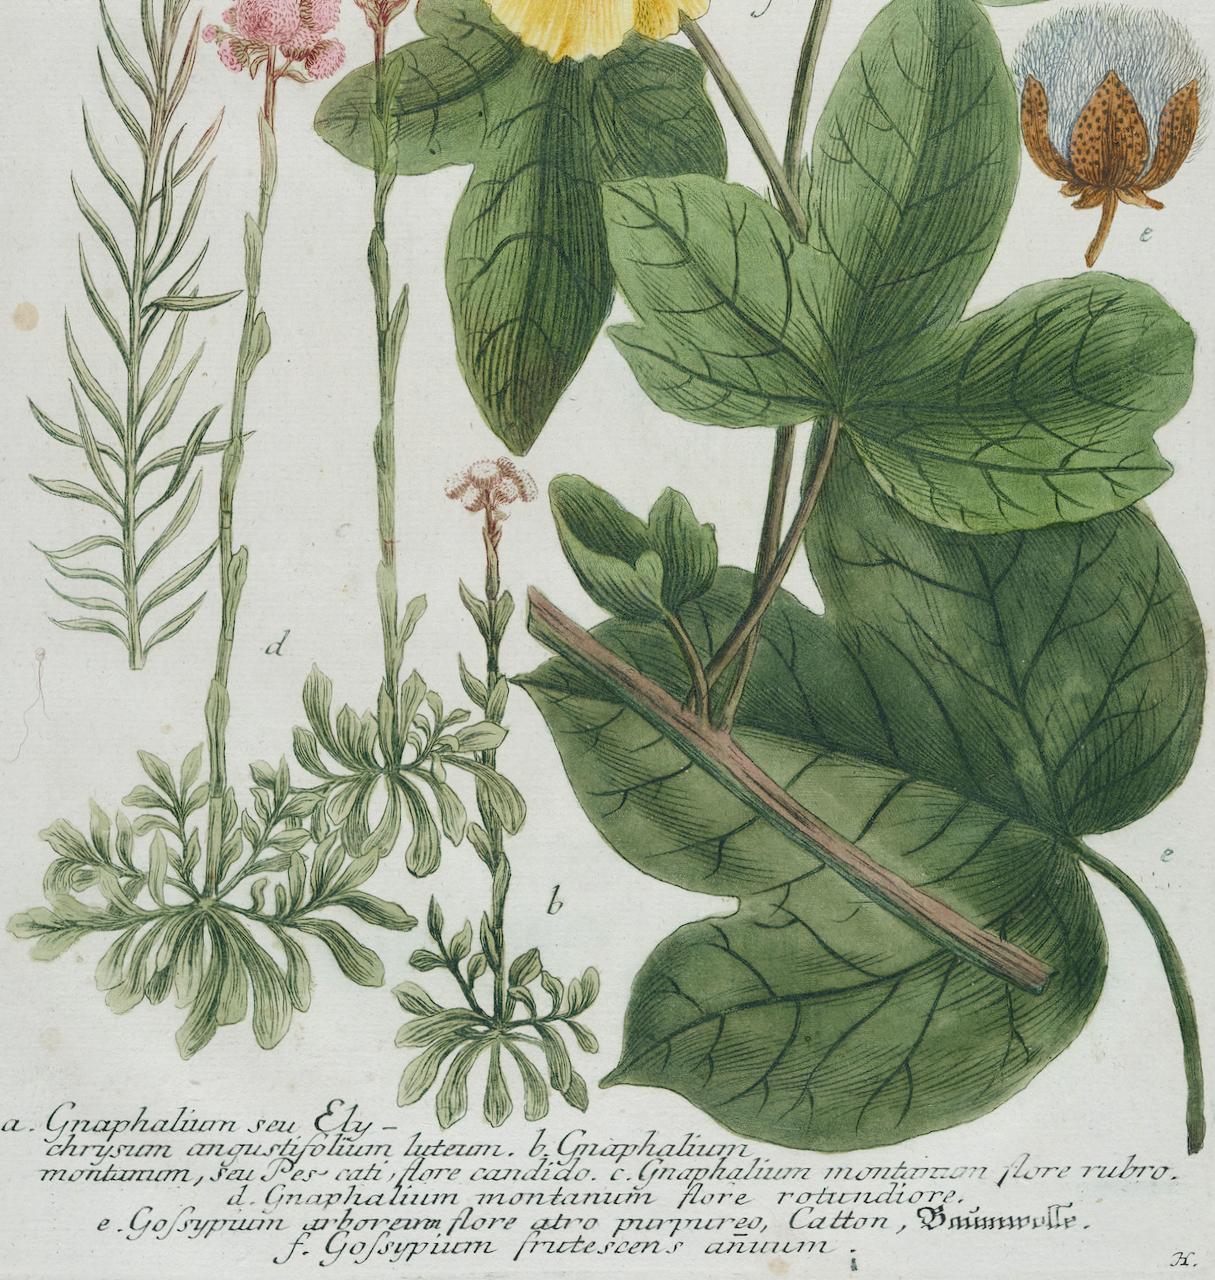 Dieser auffallende handkolorierte botanische Schabkunst- und Strichstich trägt den Titel 